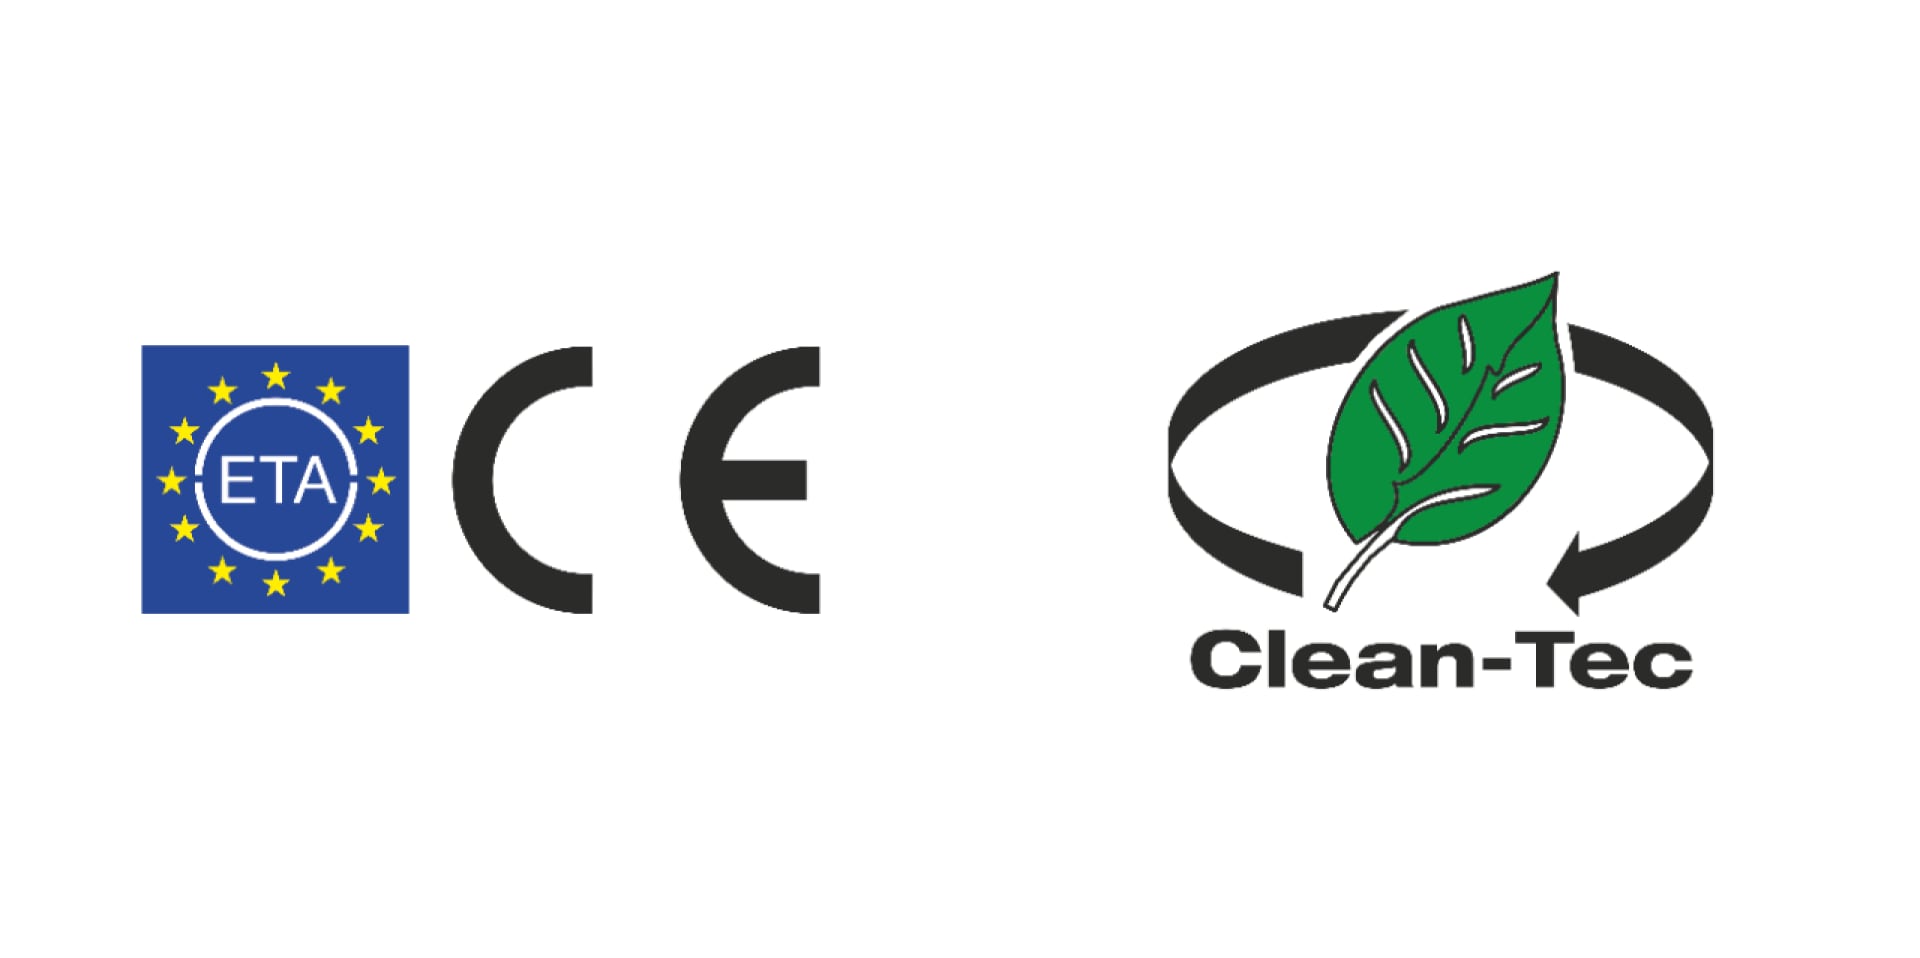 Homologación ETA y CE, además de Hilti Clean-Tec